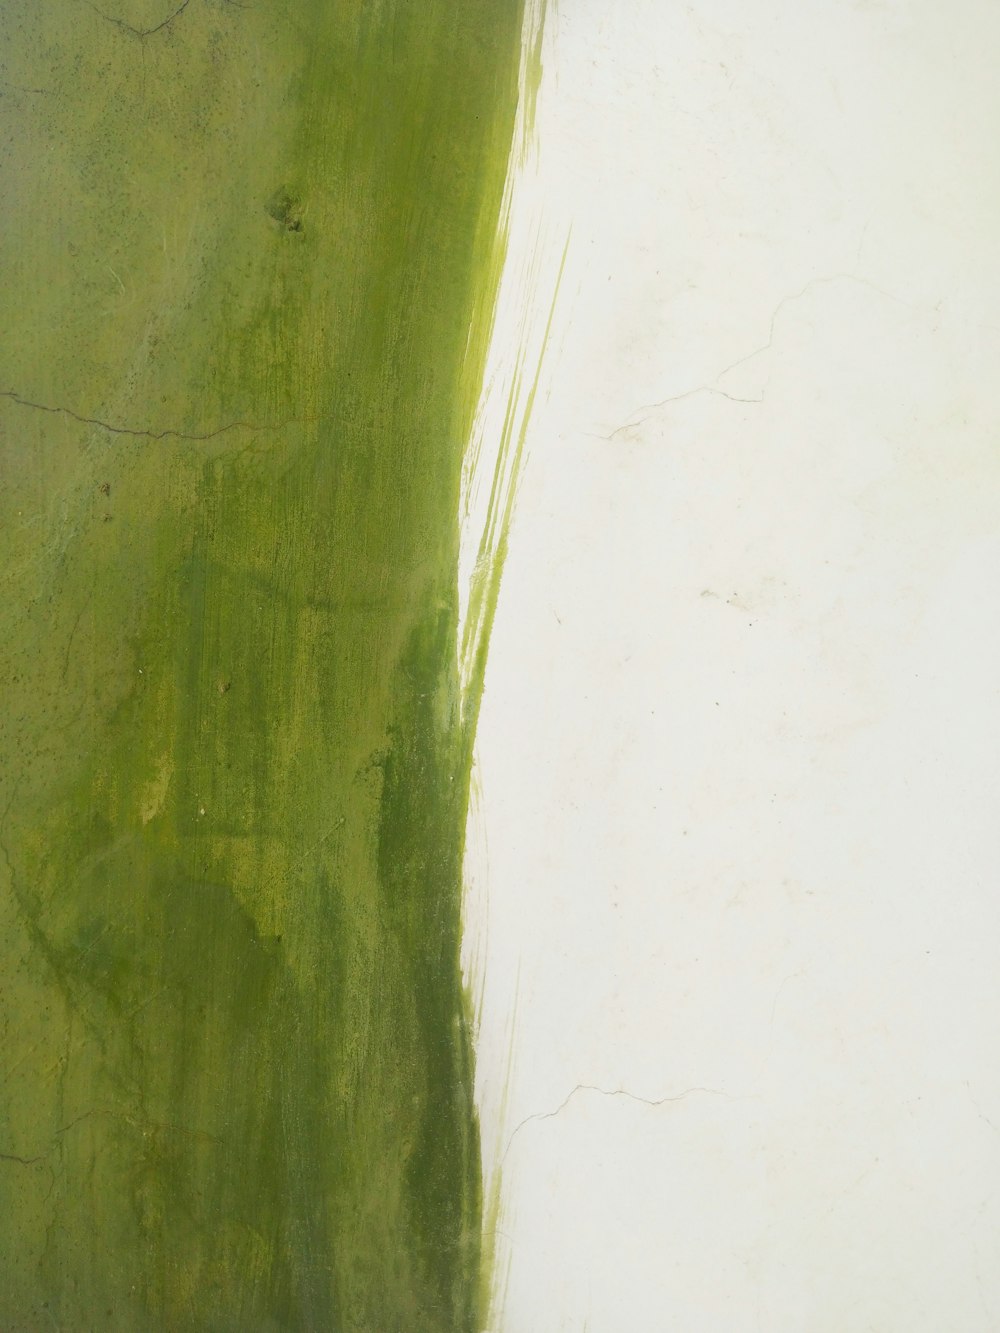 green brush stroke on white surface